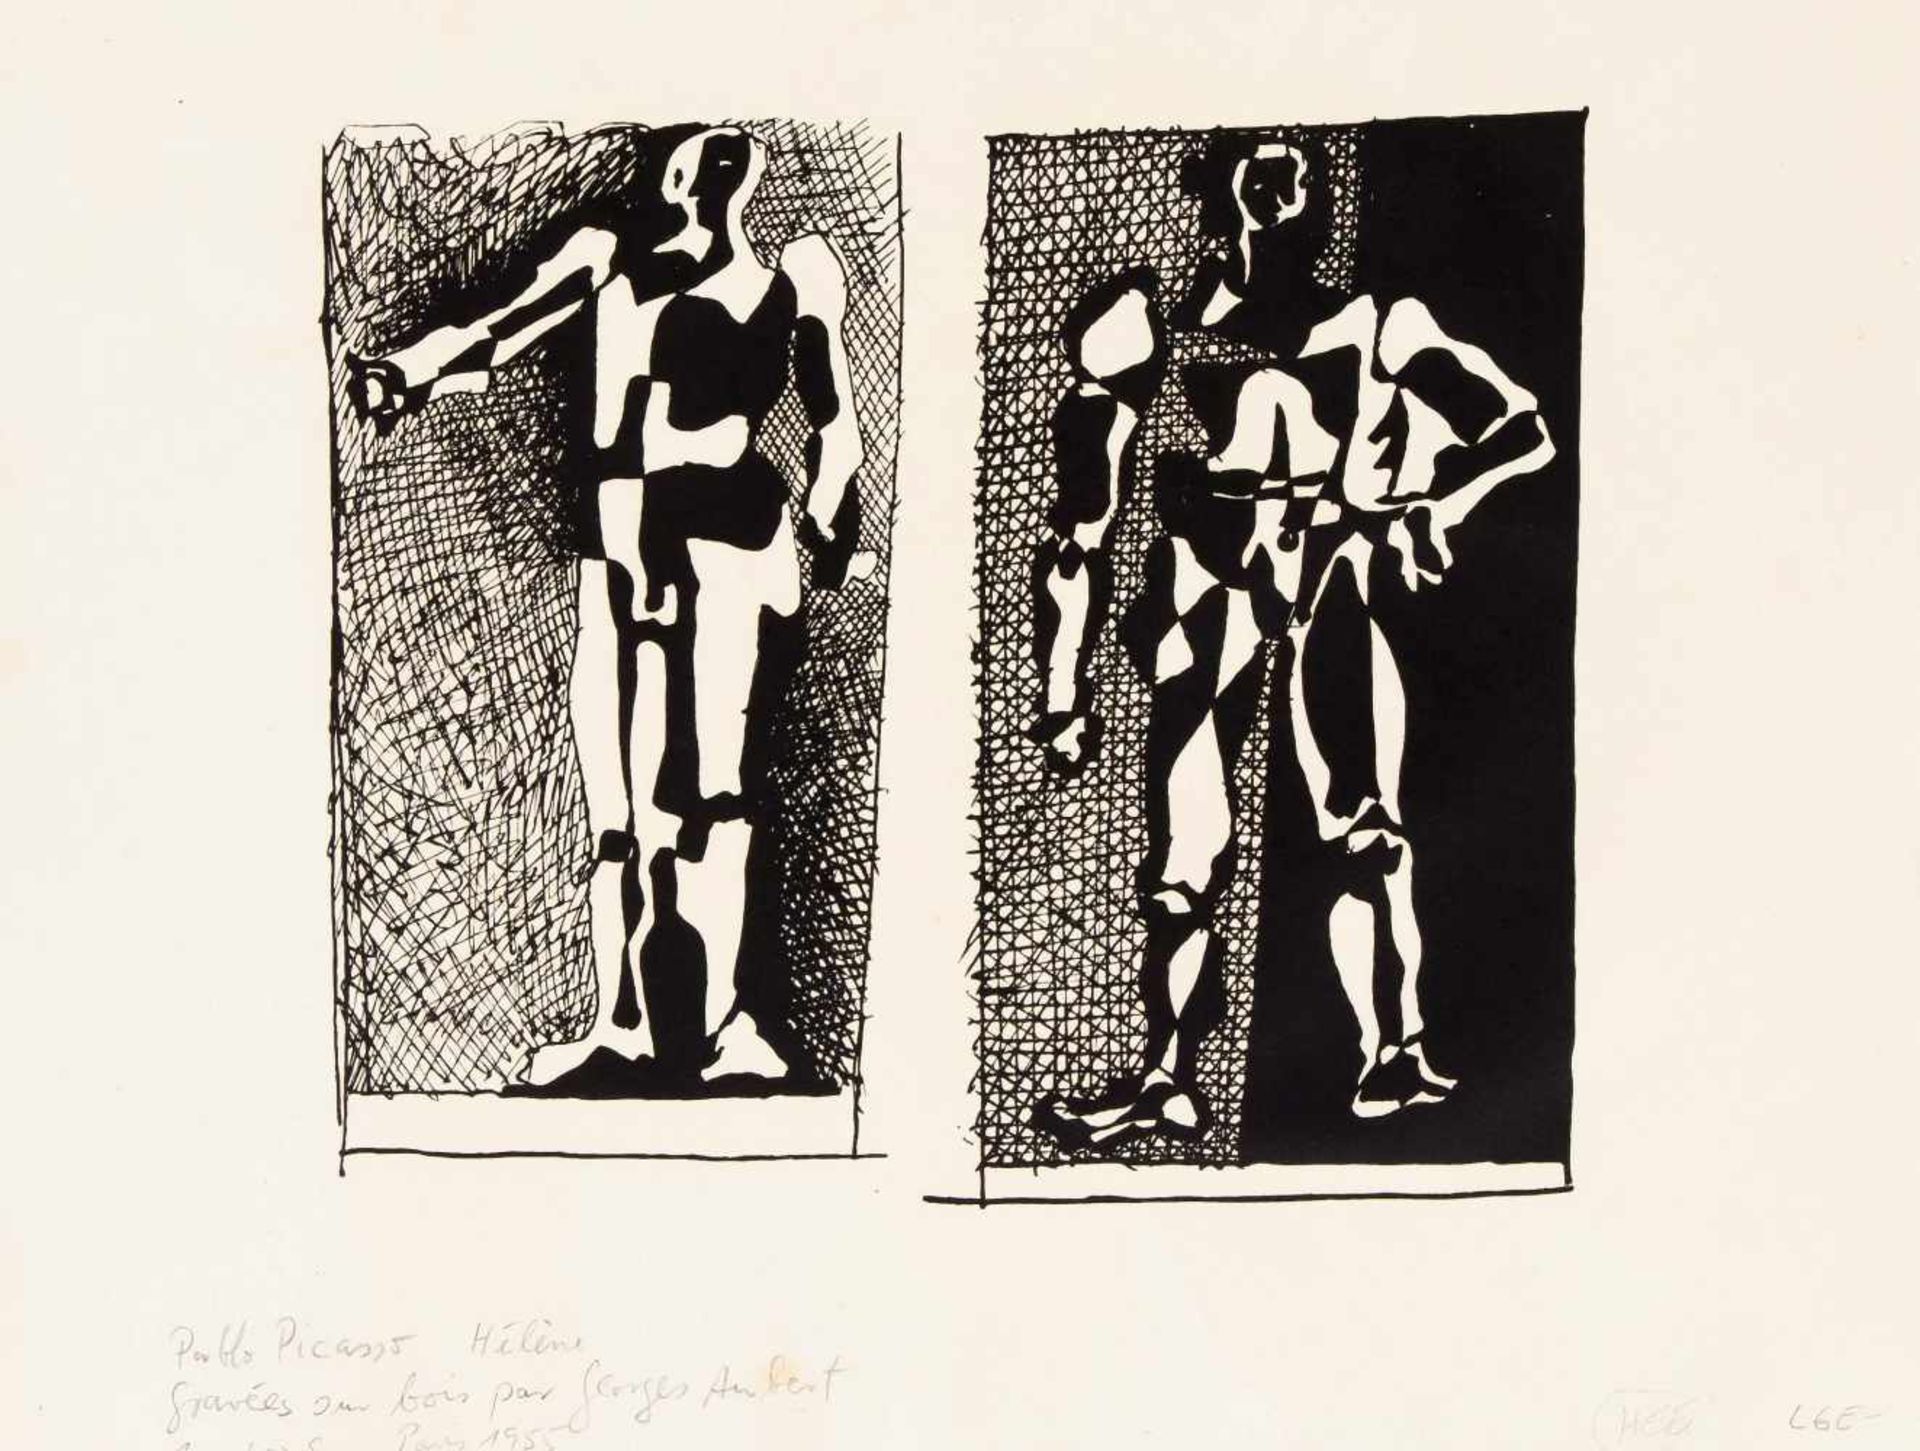 Pablo Picasso (1881-1973), Konvolut von drei Lithographien aus dem Portfolio "Helene chez